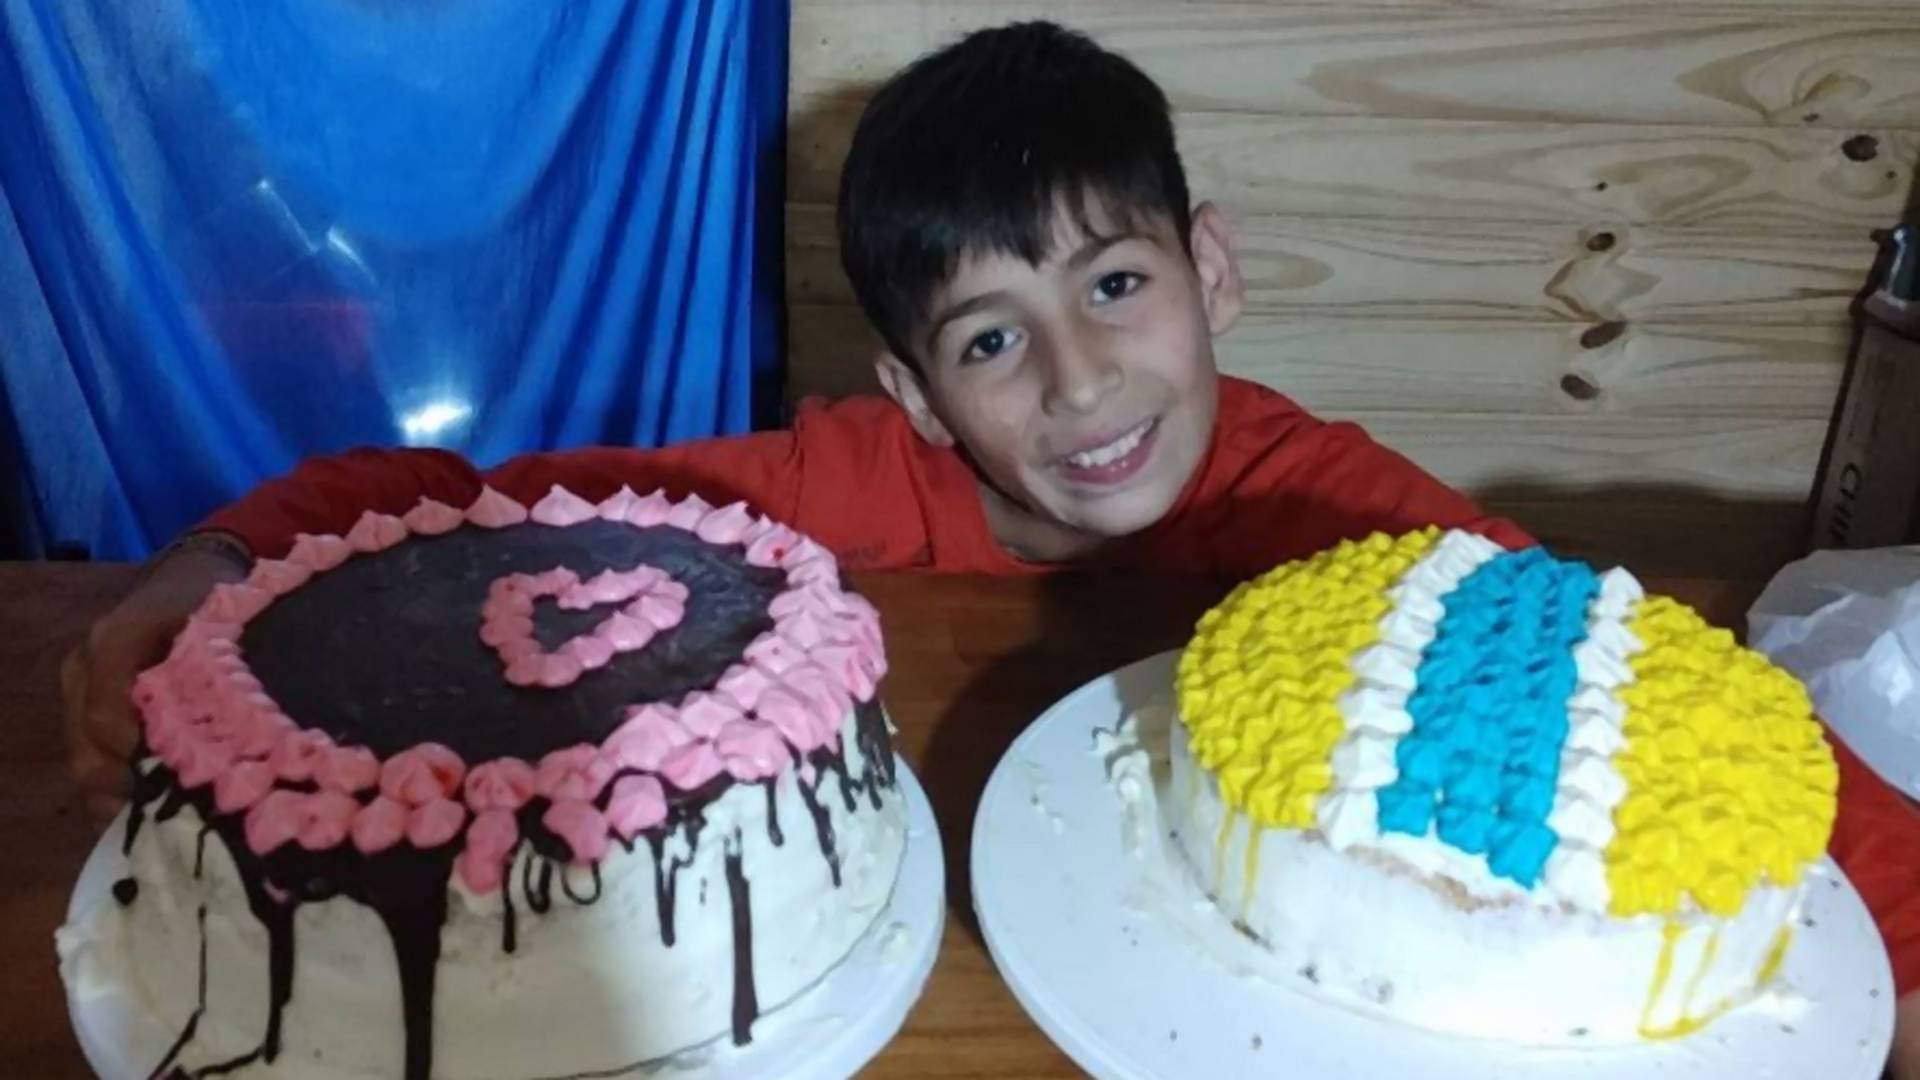 Desetogodišnji dečak pravi i prodaje kolače kako bi sakupio novac za operaciju lica koje mu je izgorelo